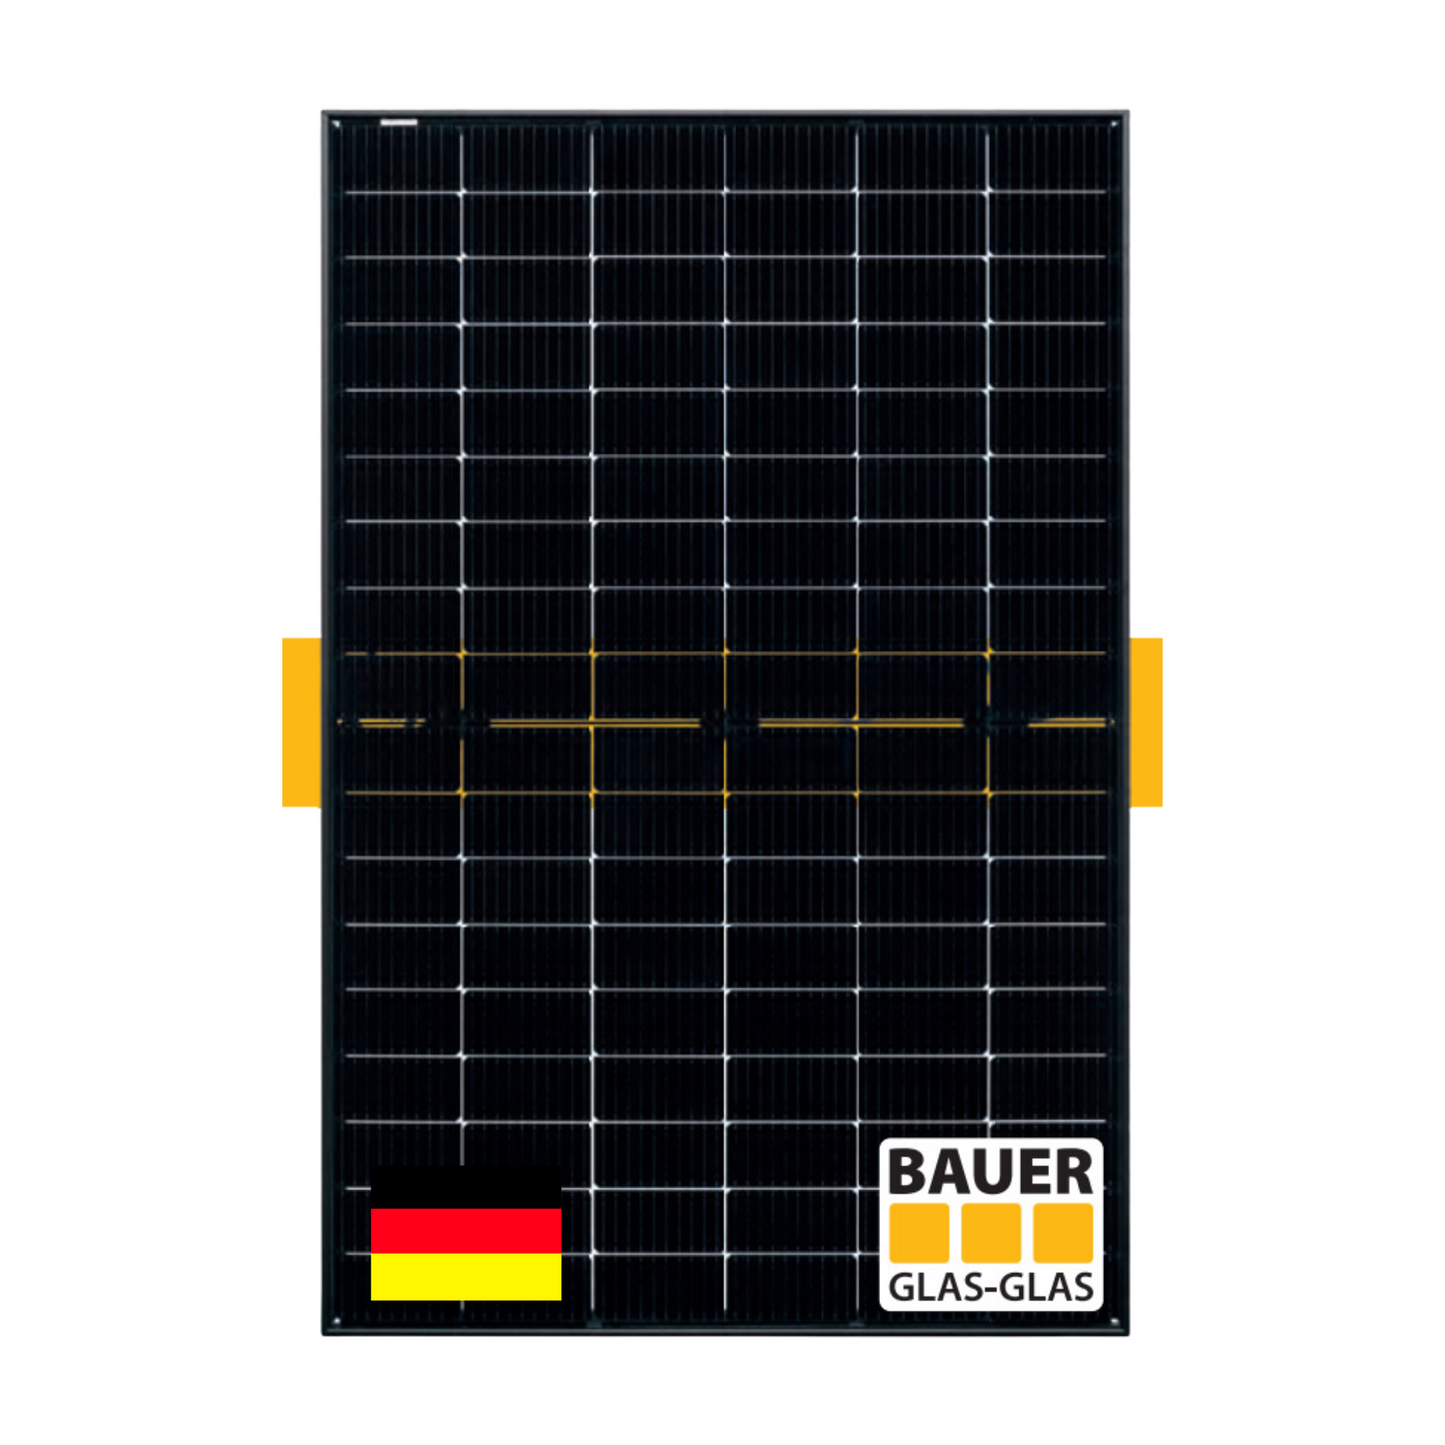 35x Bauer 400w Solarmodul BIFAZIAL GLAS/GLAS ( Palette ) - Deutscher Hersteller